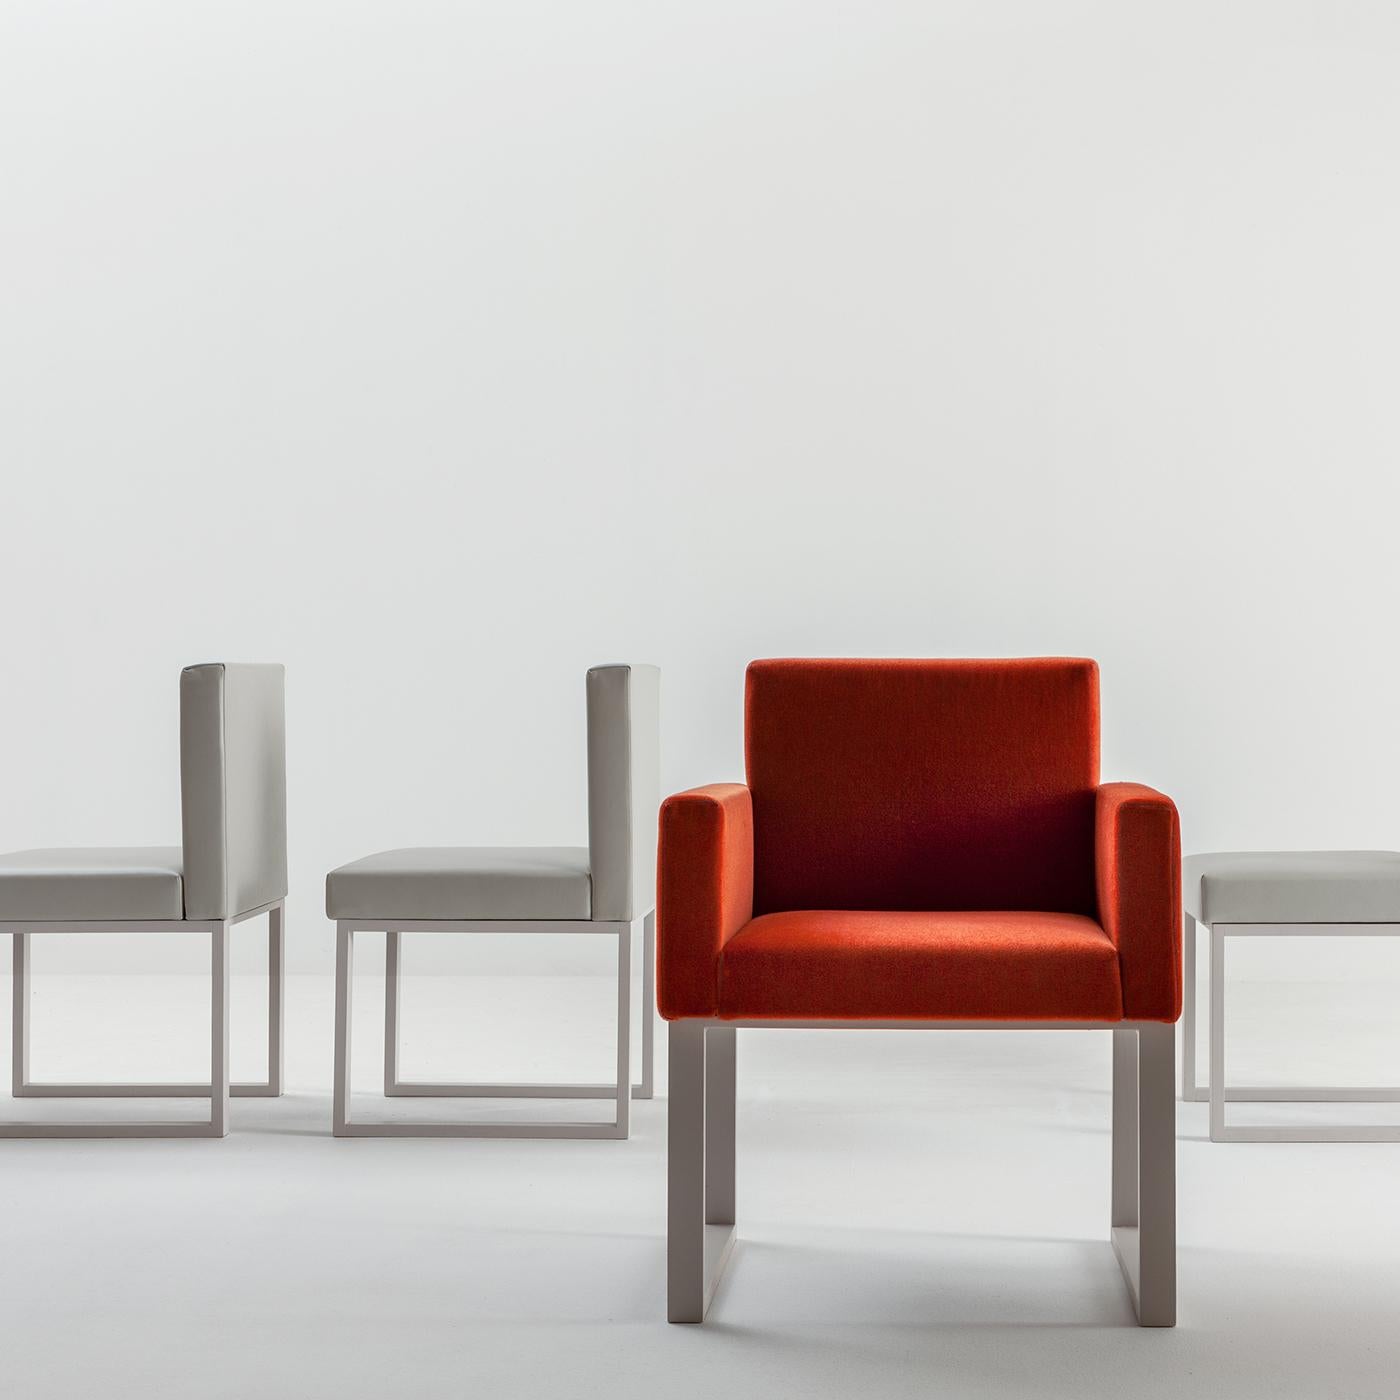 Der Maxima Chair von Bartoli Design ist sehr bequem und hat wunderschöne einfache Linien. Er ist aus Holz gefertigt und mit hochwertigem Stoff oder Leder gepolstert. Die Beine können in einer Reihe von Holztönen oder lackiert in jeder Farbe der